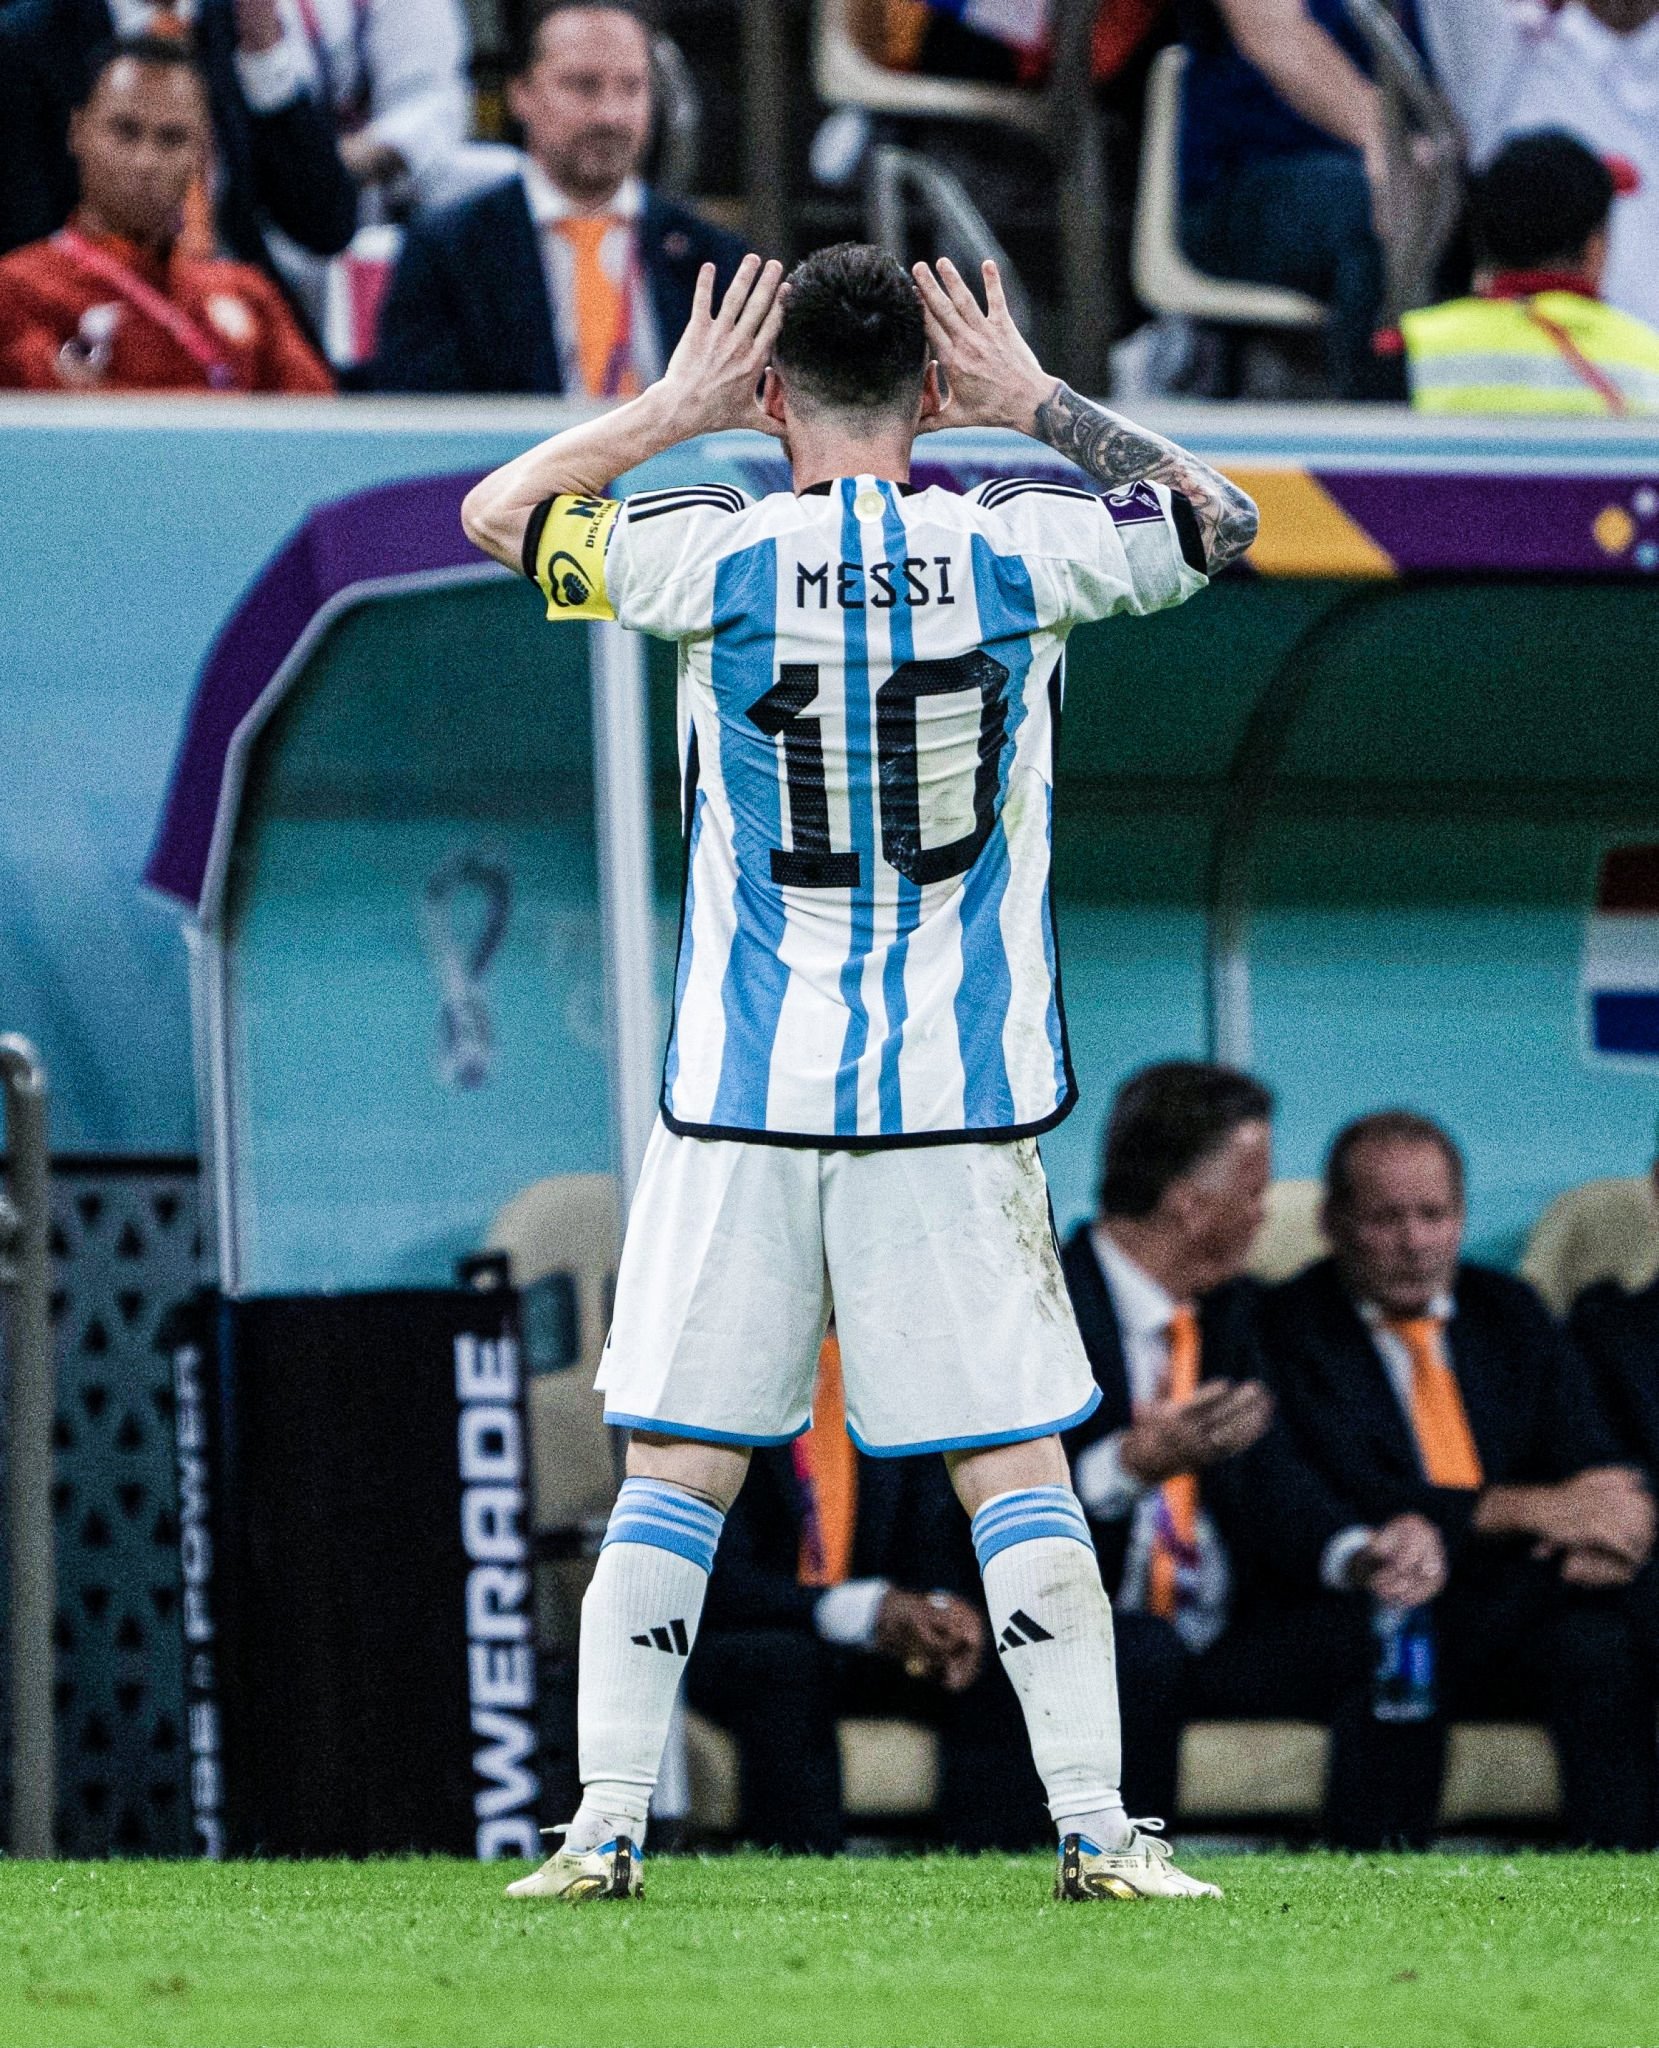 Những giải thích của HLV Van Gaal về Messi làm sáng tỏ về tài năng và khả năng chơi bóng của anh ấy. Hãy xem bức ảnh liên quan để có thể hiểu được tầm ảnh hưởng mà Messi đã góp phần đưa đội tuyển Argentina đến với những chiến thắng lịch sử.